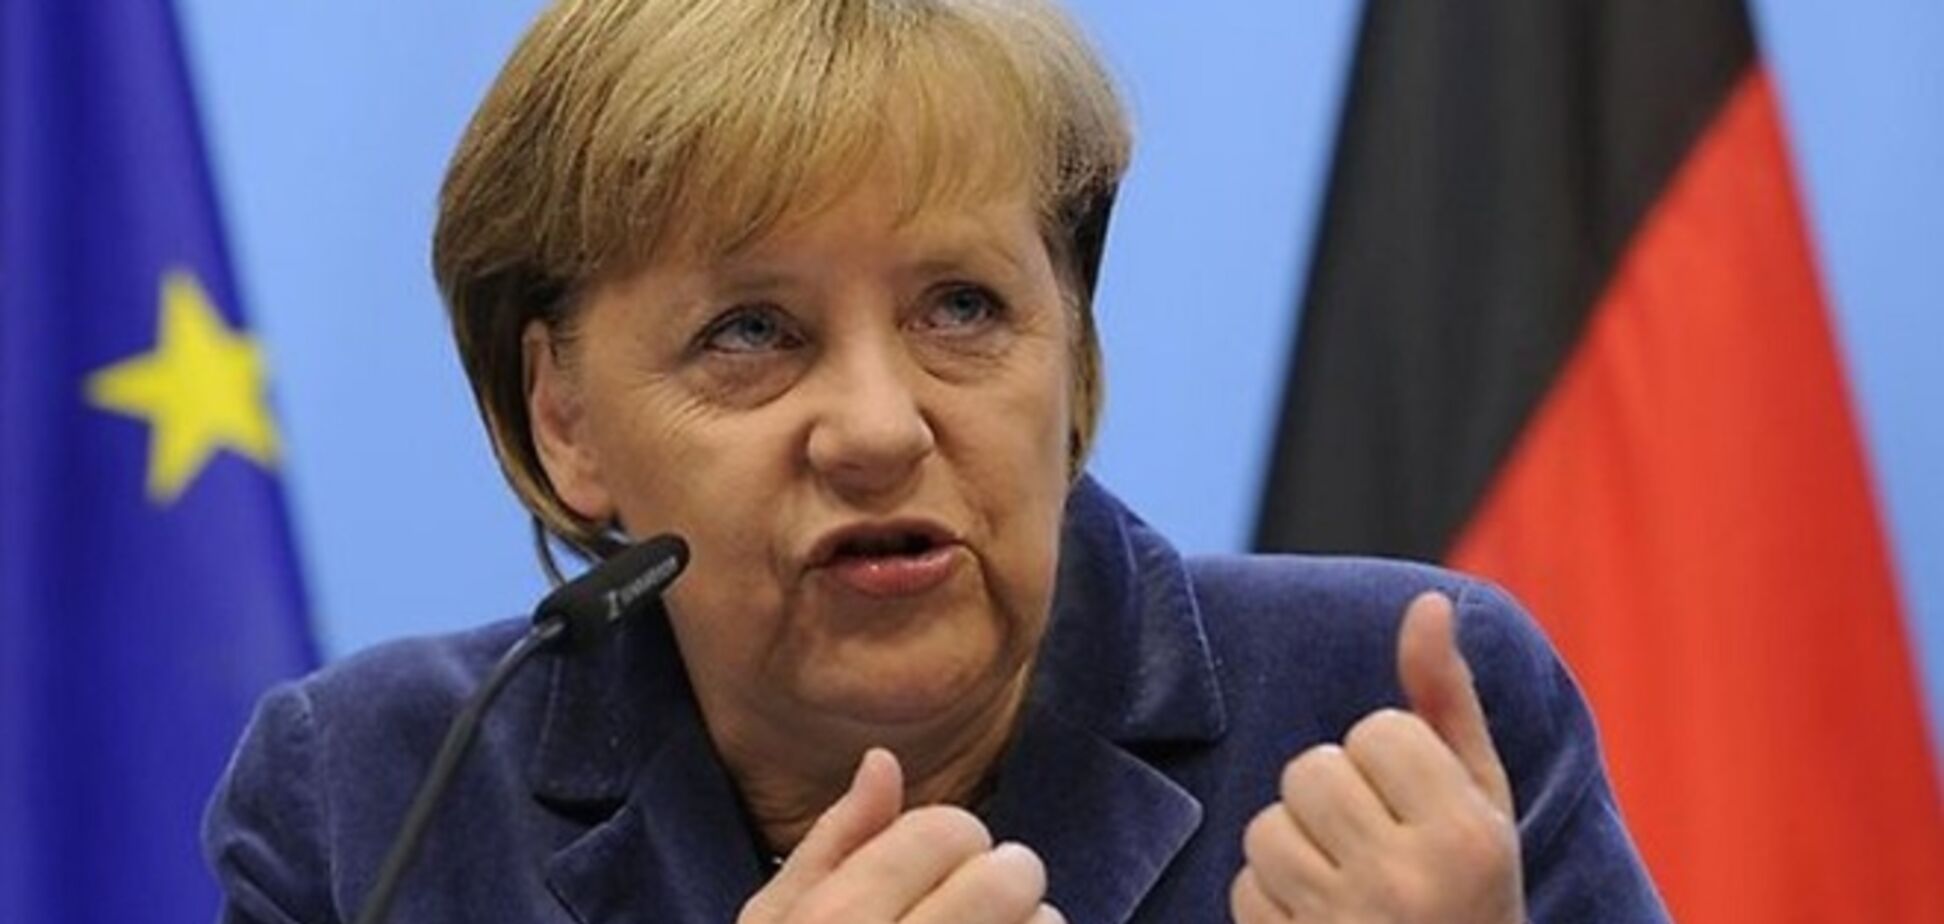 Германия не будет поставлять оружие в Украину - Меркель